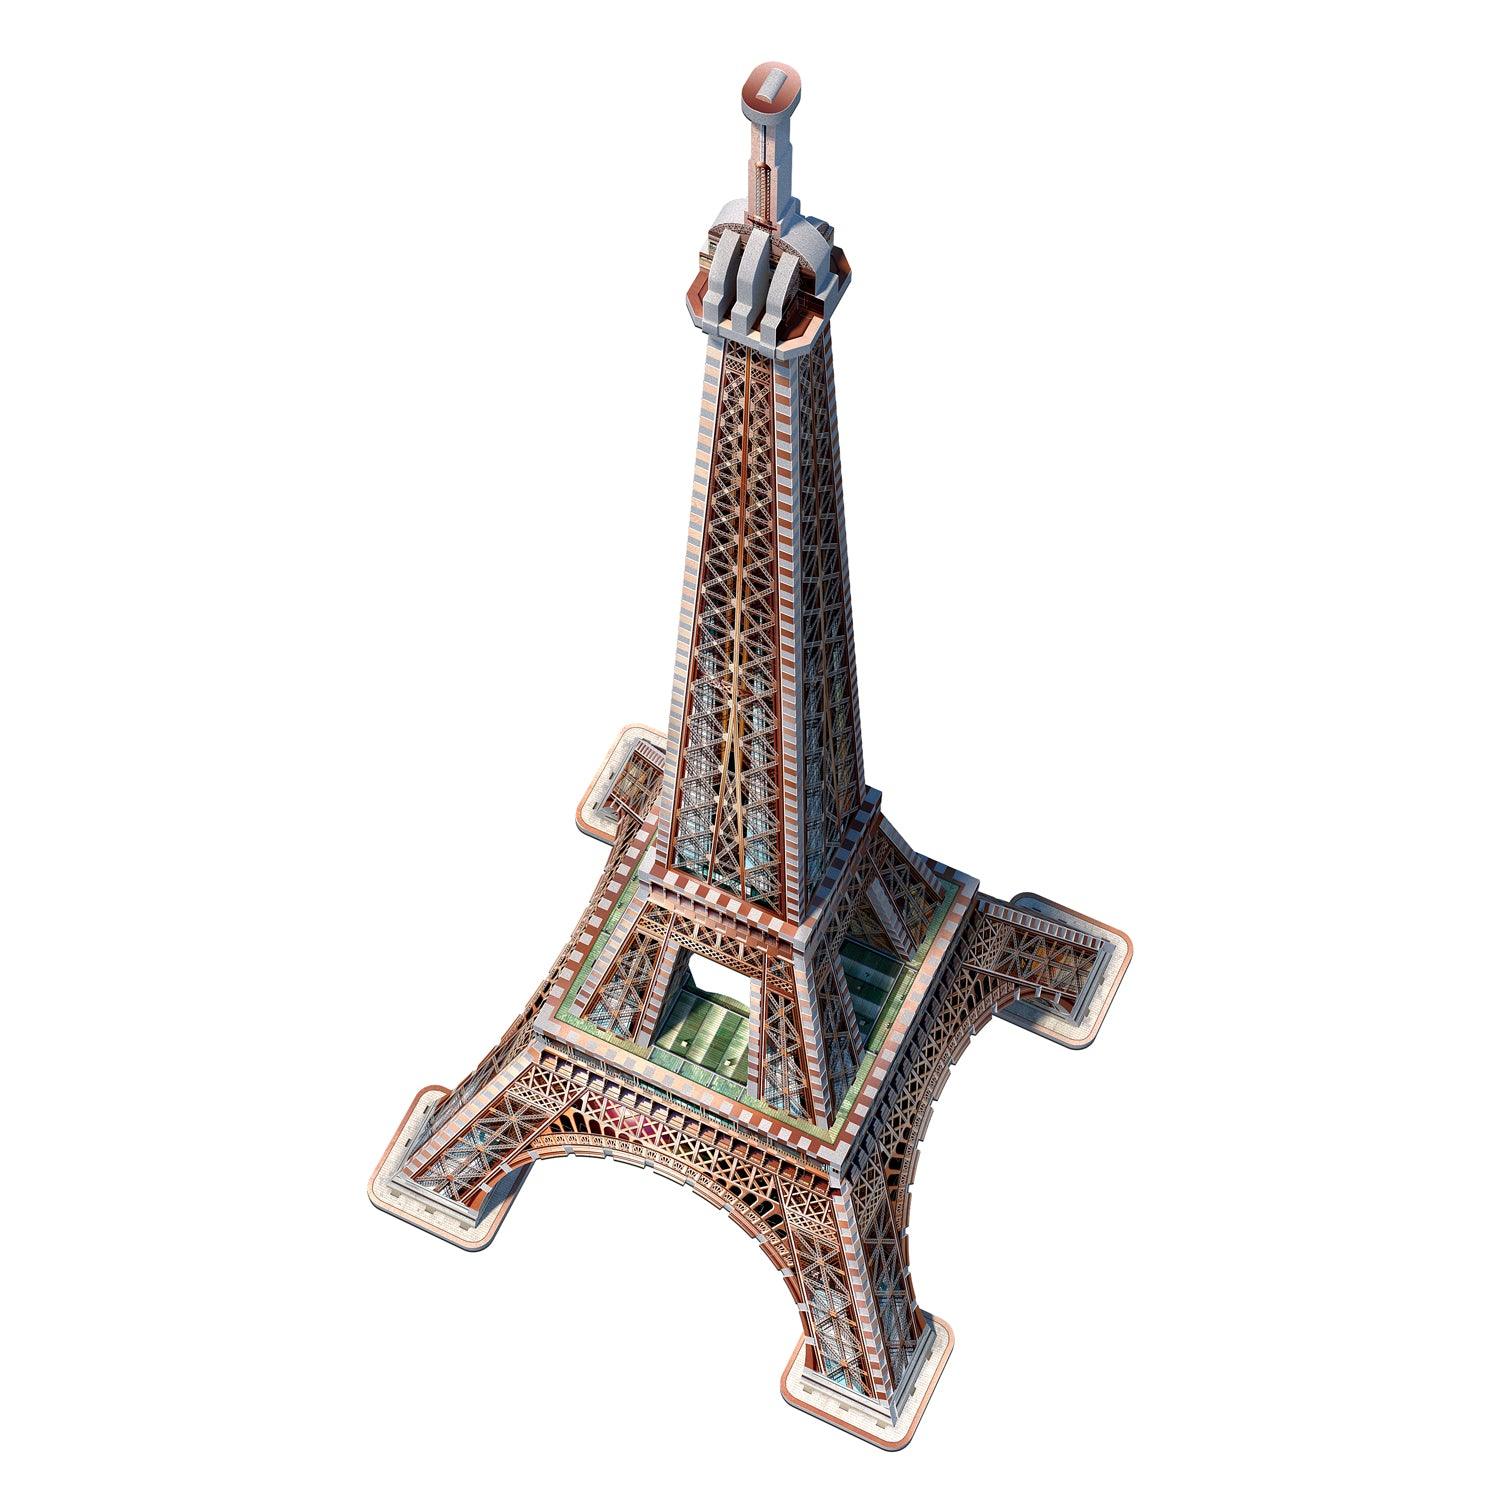 La Tour Eiffel - 816 mcx 3D - La Ribouldingue